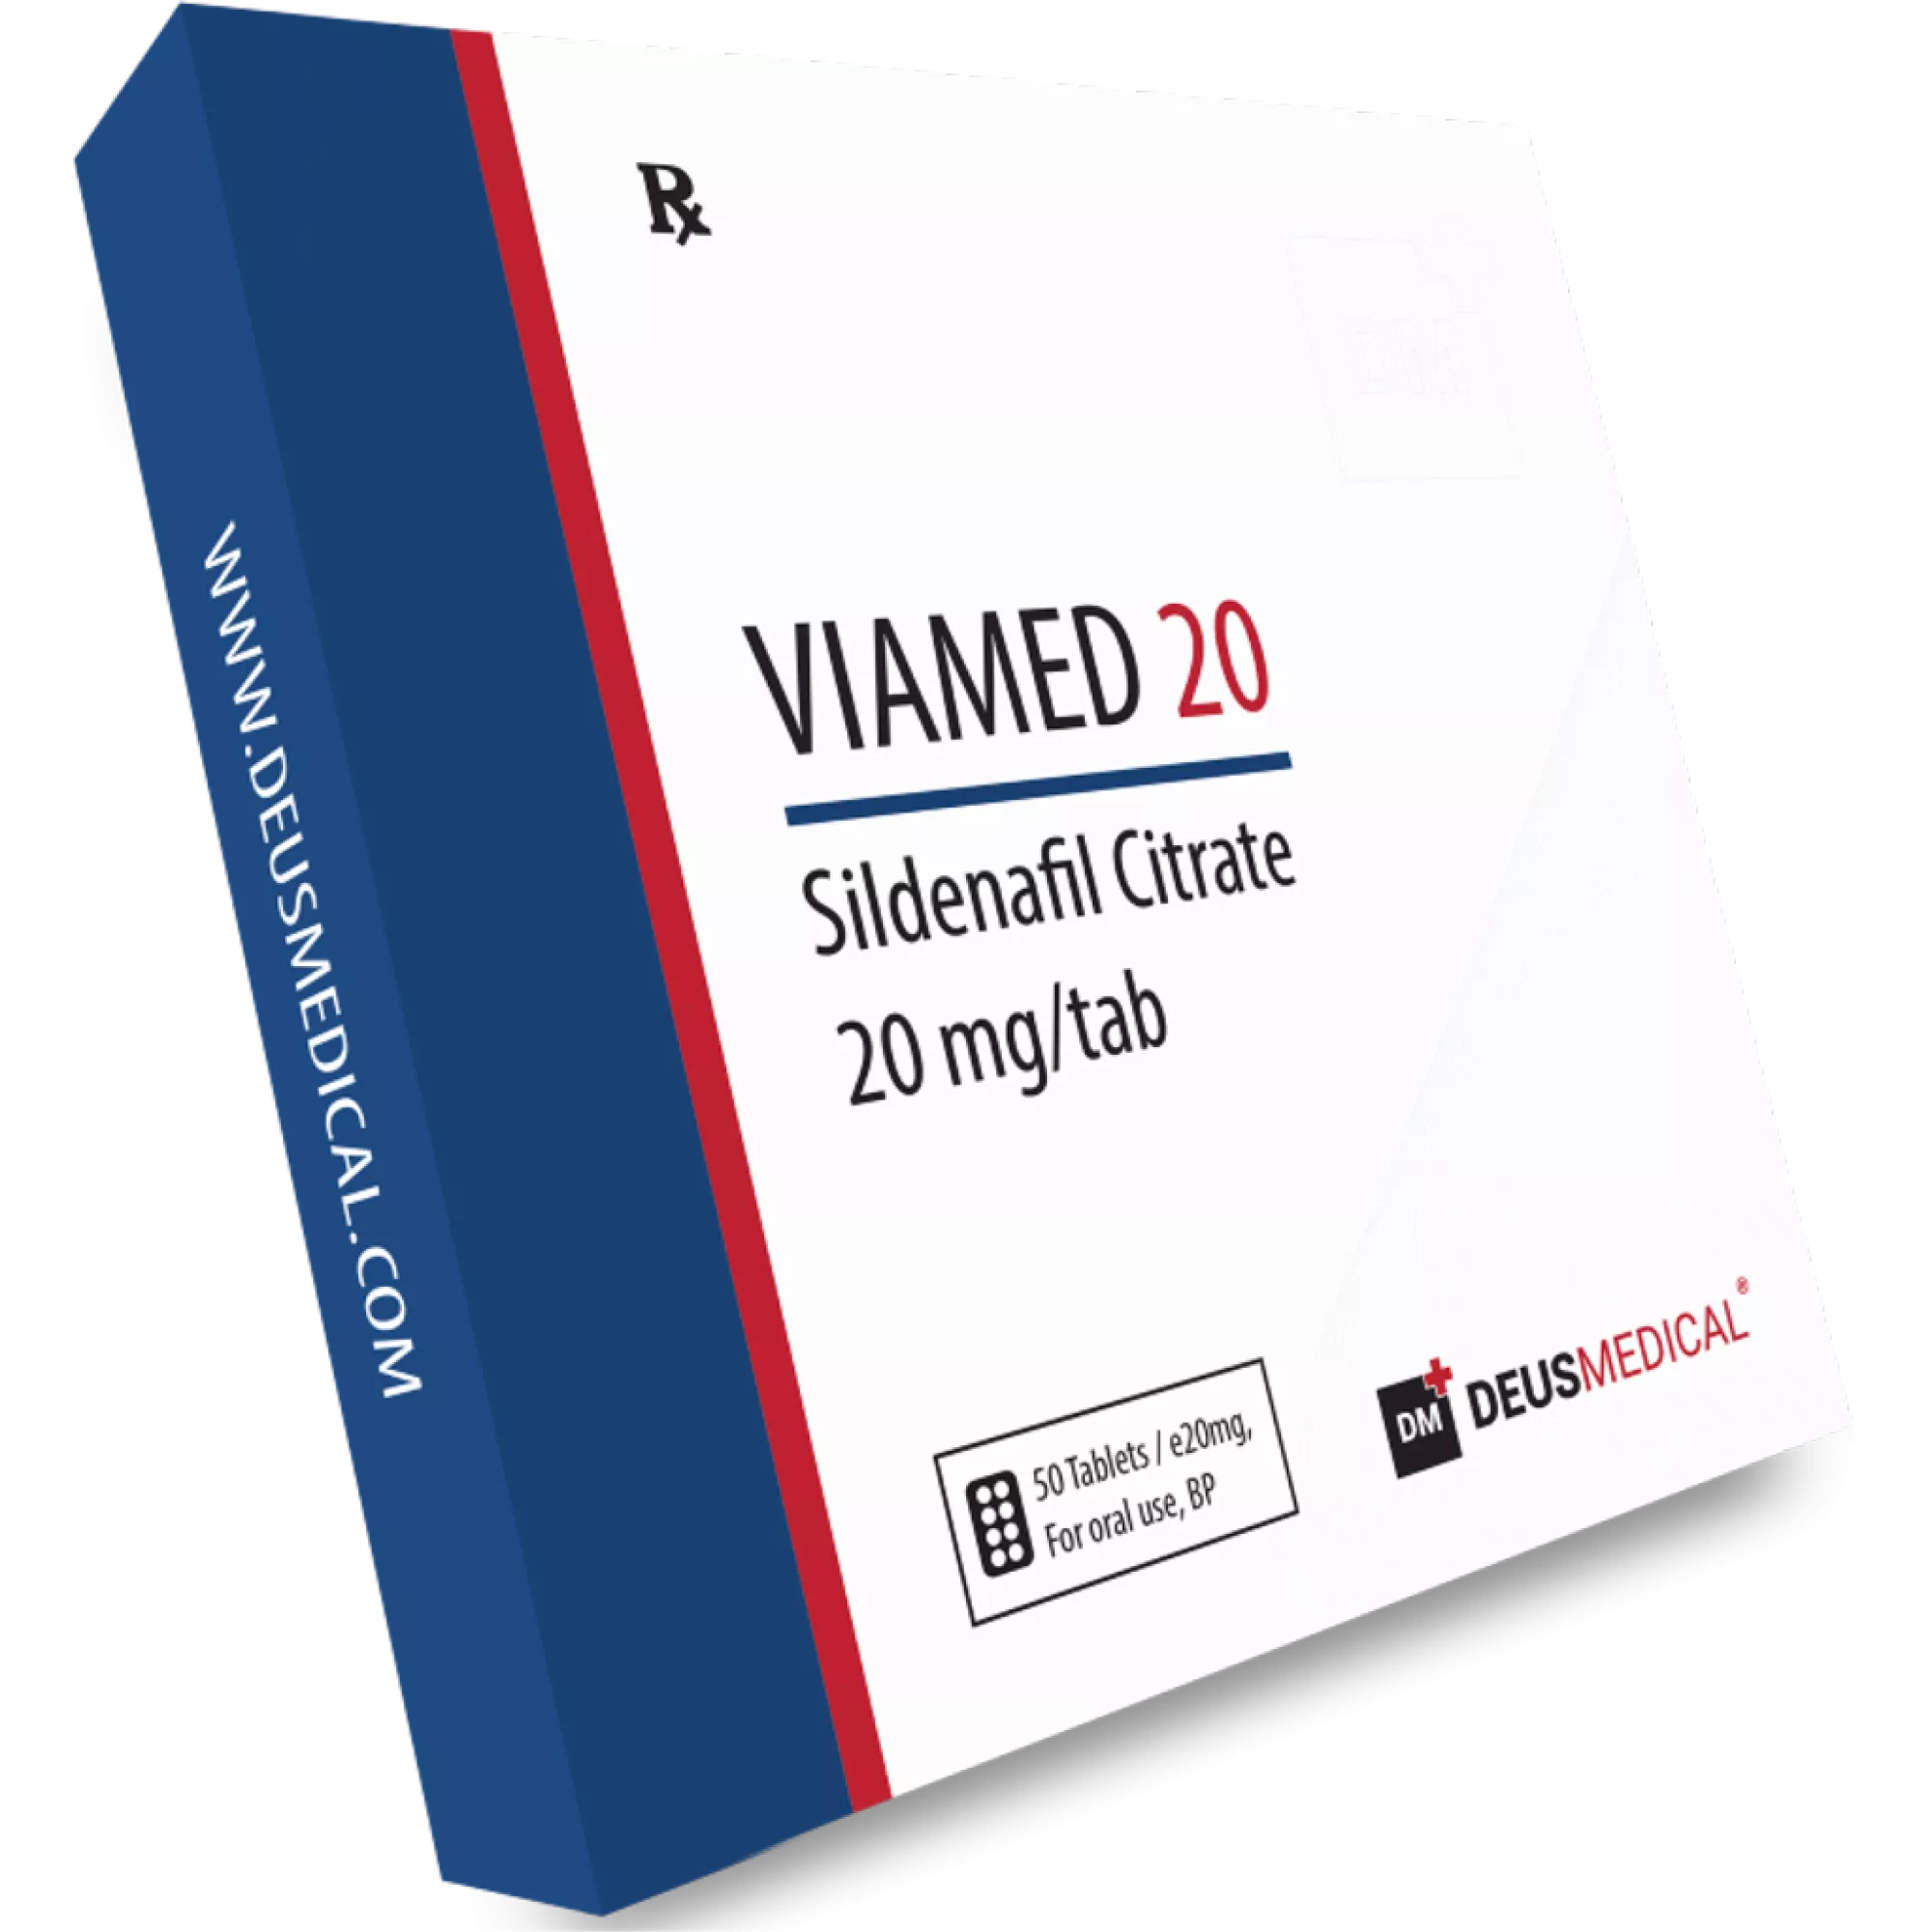 VIAMED 20 (Sildenafil Citrat) - Viagra, Deus Medical, Kaufen Sie Steroide Online - www.deuspower.shop